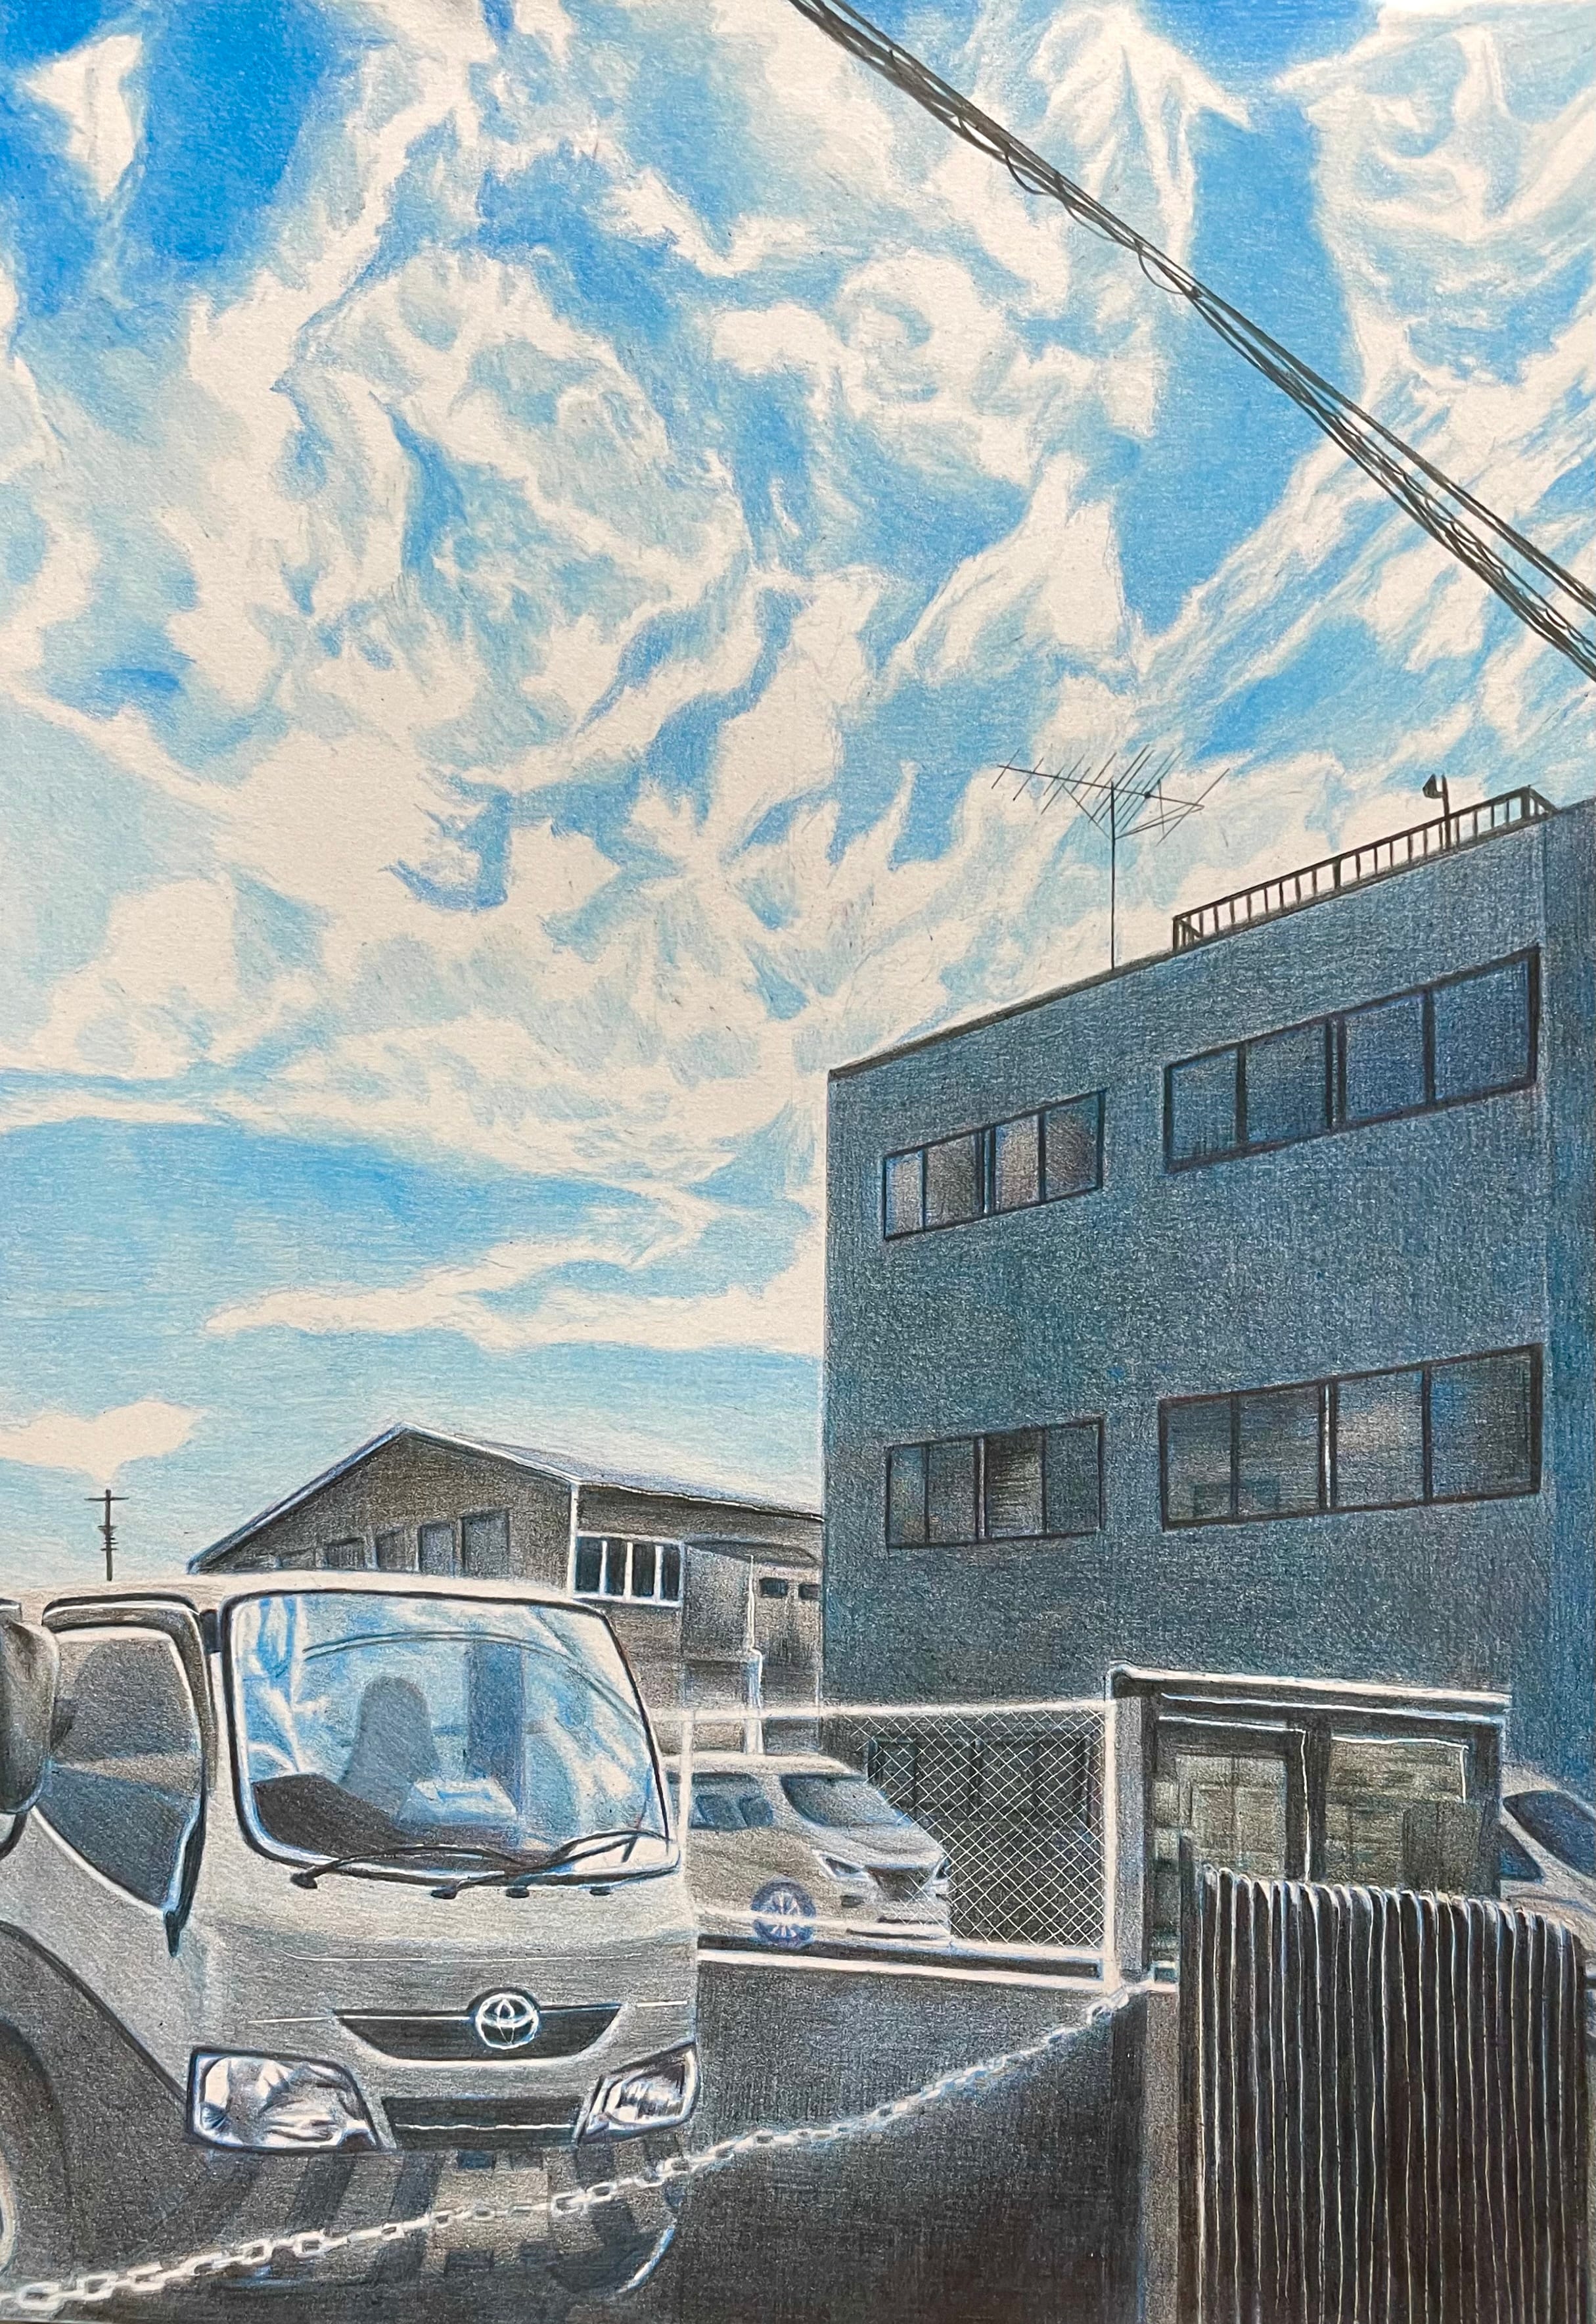 夏空とトラック 色鉛筆 5色 空 雲 車 絵 原画 イラスト プレゼント Yune 色鉛筆画家